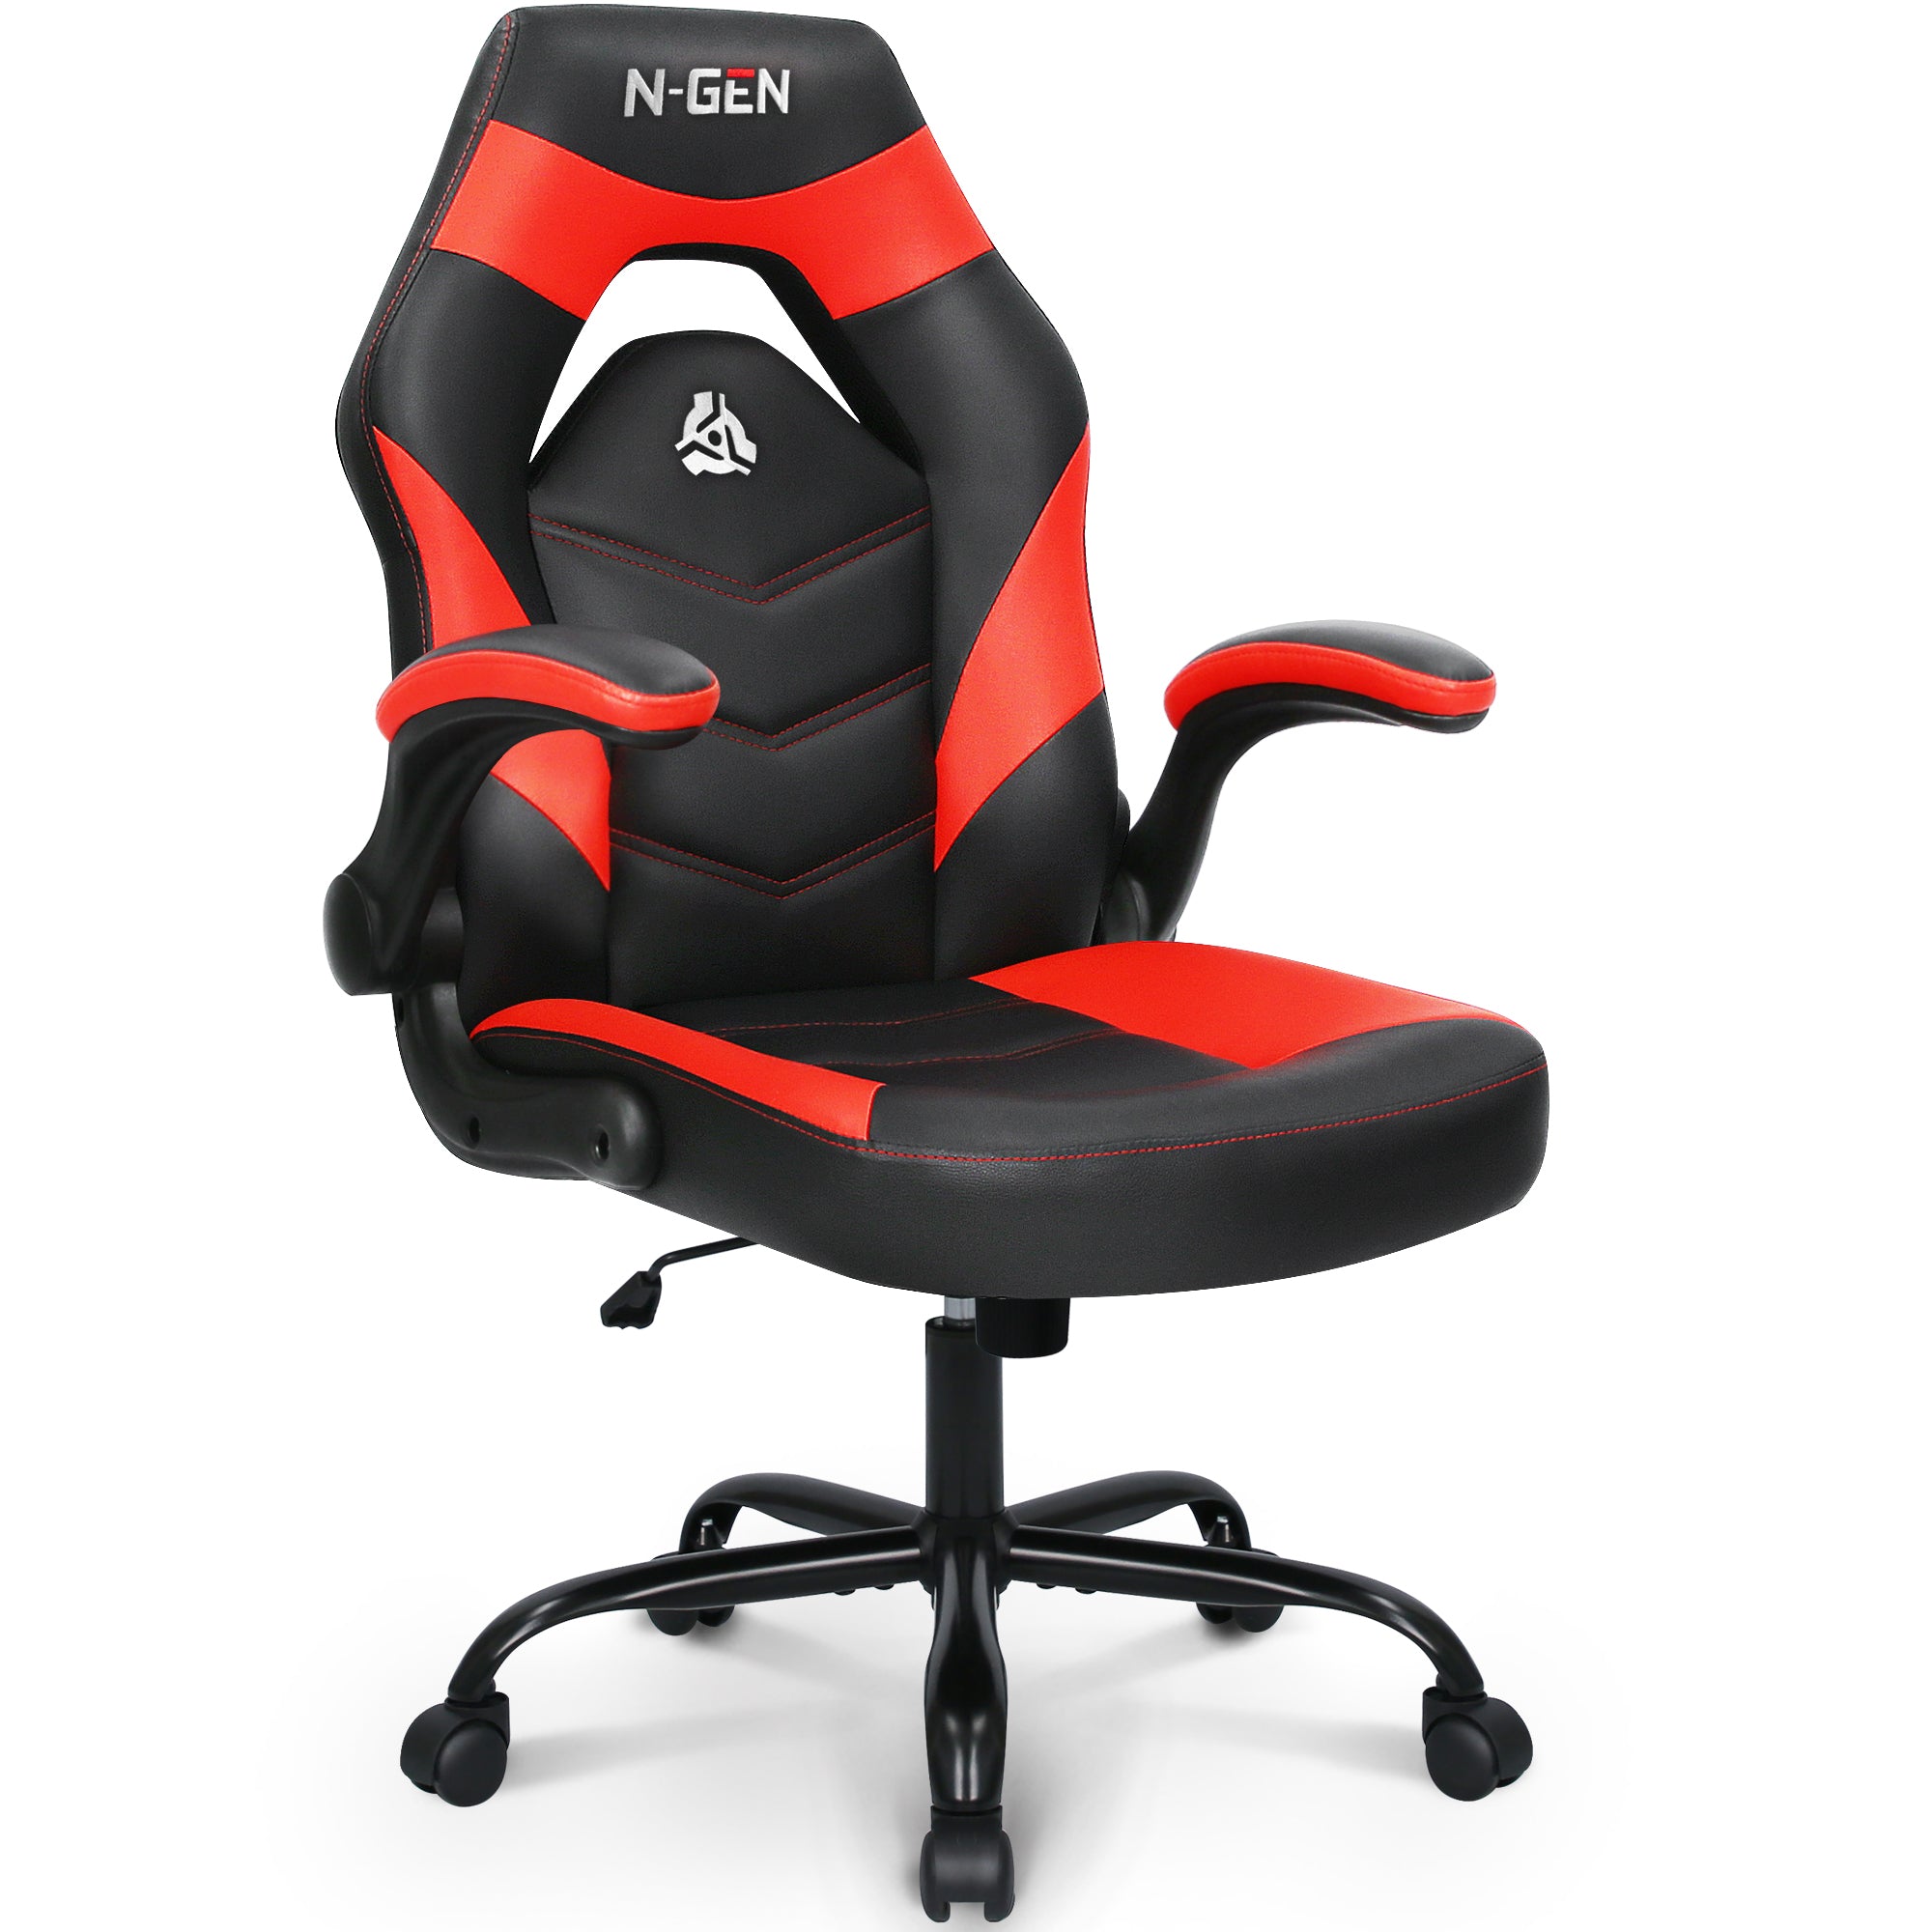 N-GEN Apex series – Neo Chair